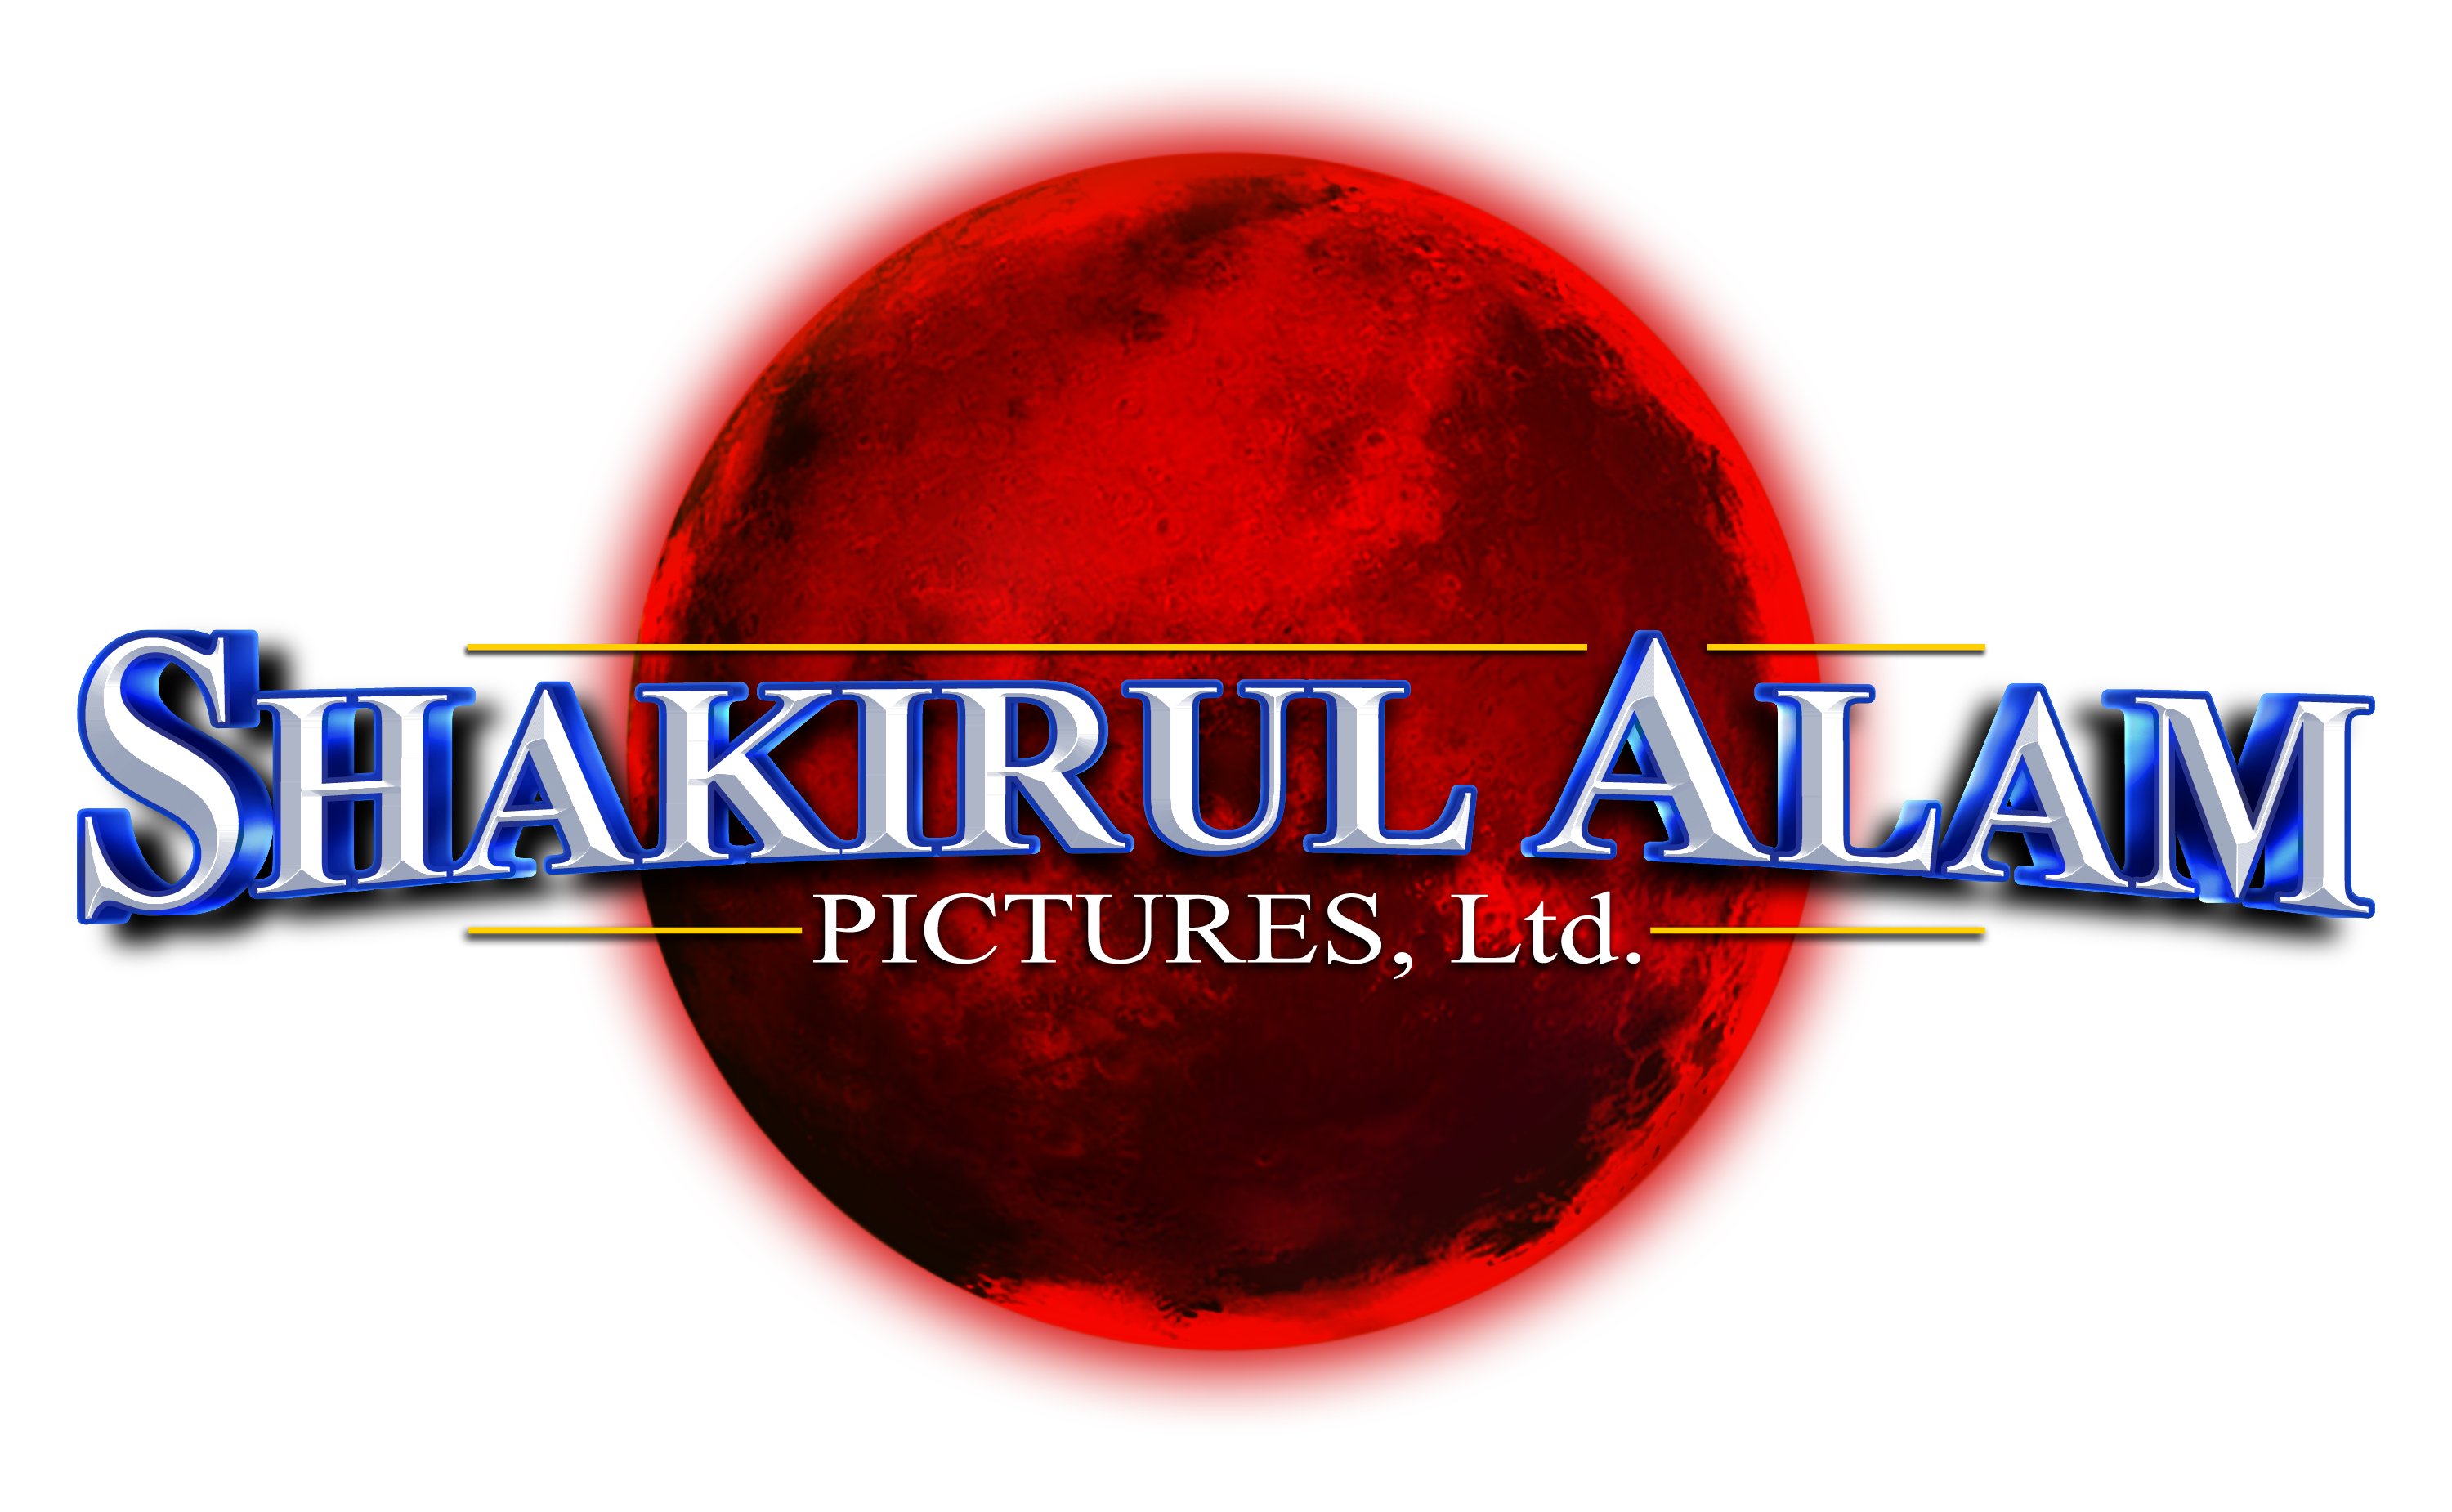 Shakirul Alam Pictures Ltd